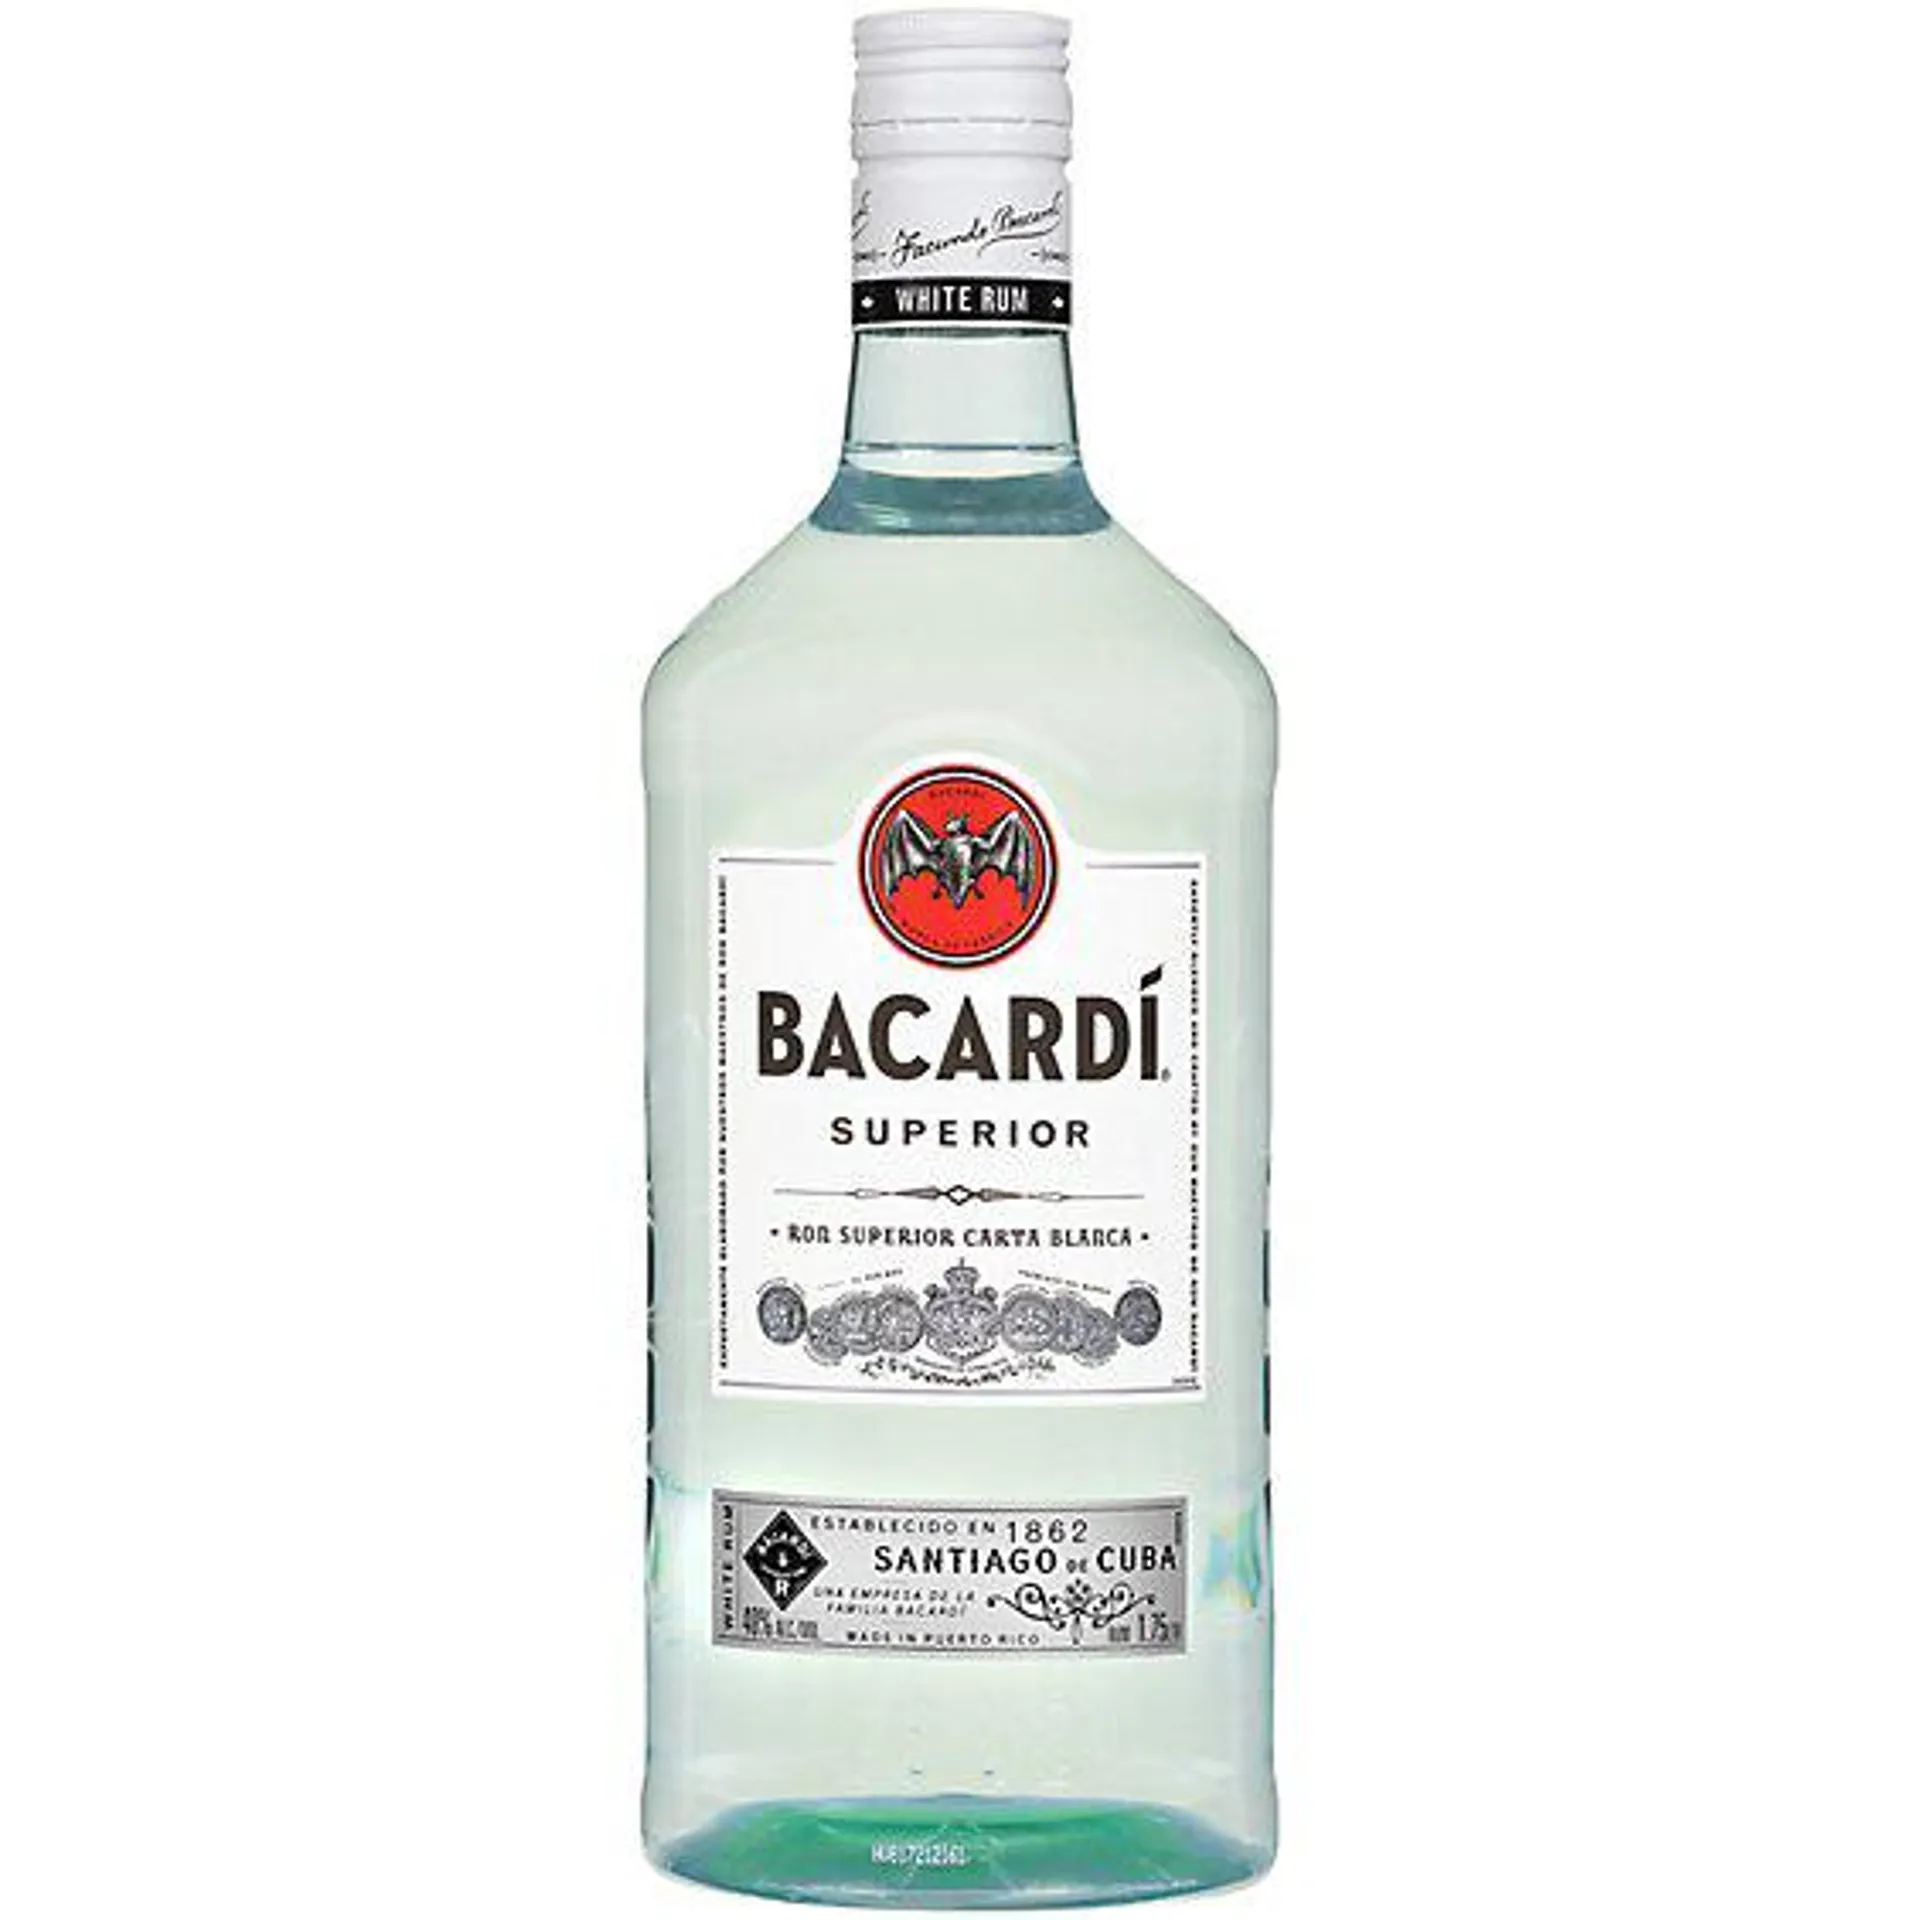 Bacardi Superior Gluten Free White Rum - 1.75 Liter